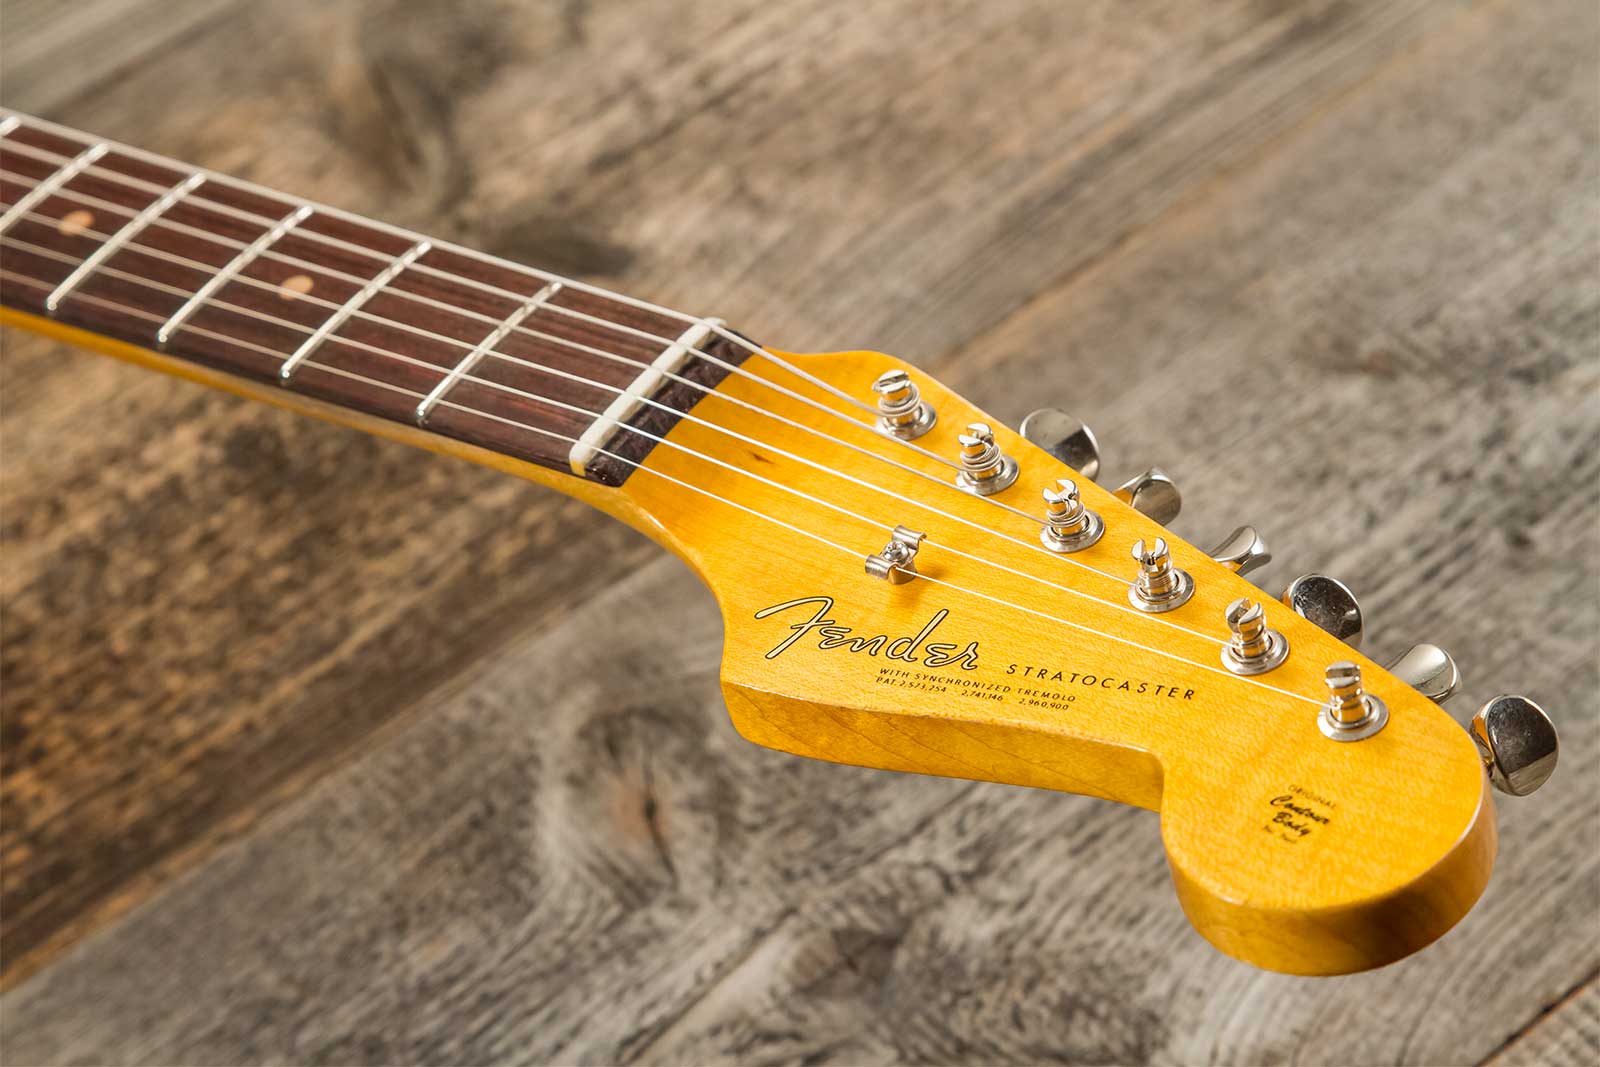 Fender Custom Shop Strat 1964 3s Trem Rw #cz579859 - Journey Man Relic Aged Surf Green - Elektrische gitaar in Str-vorm - Variation 8